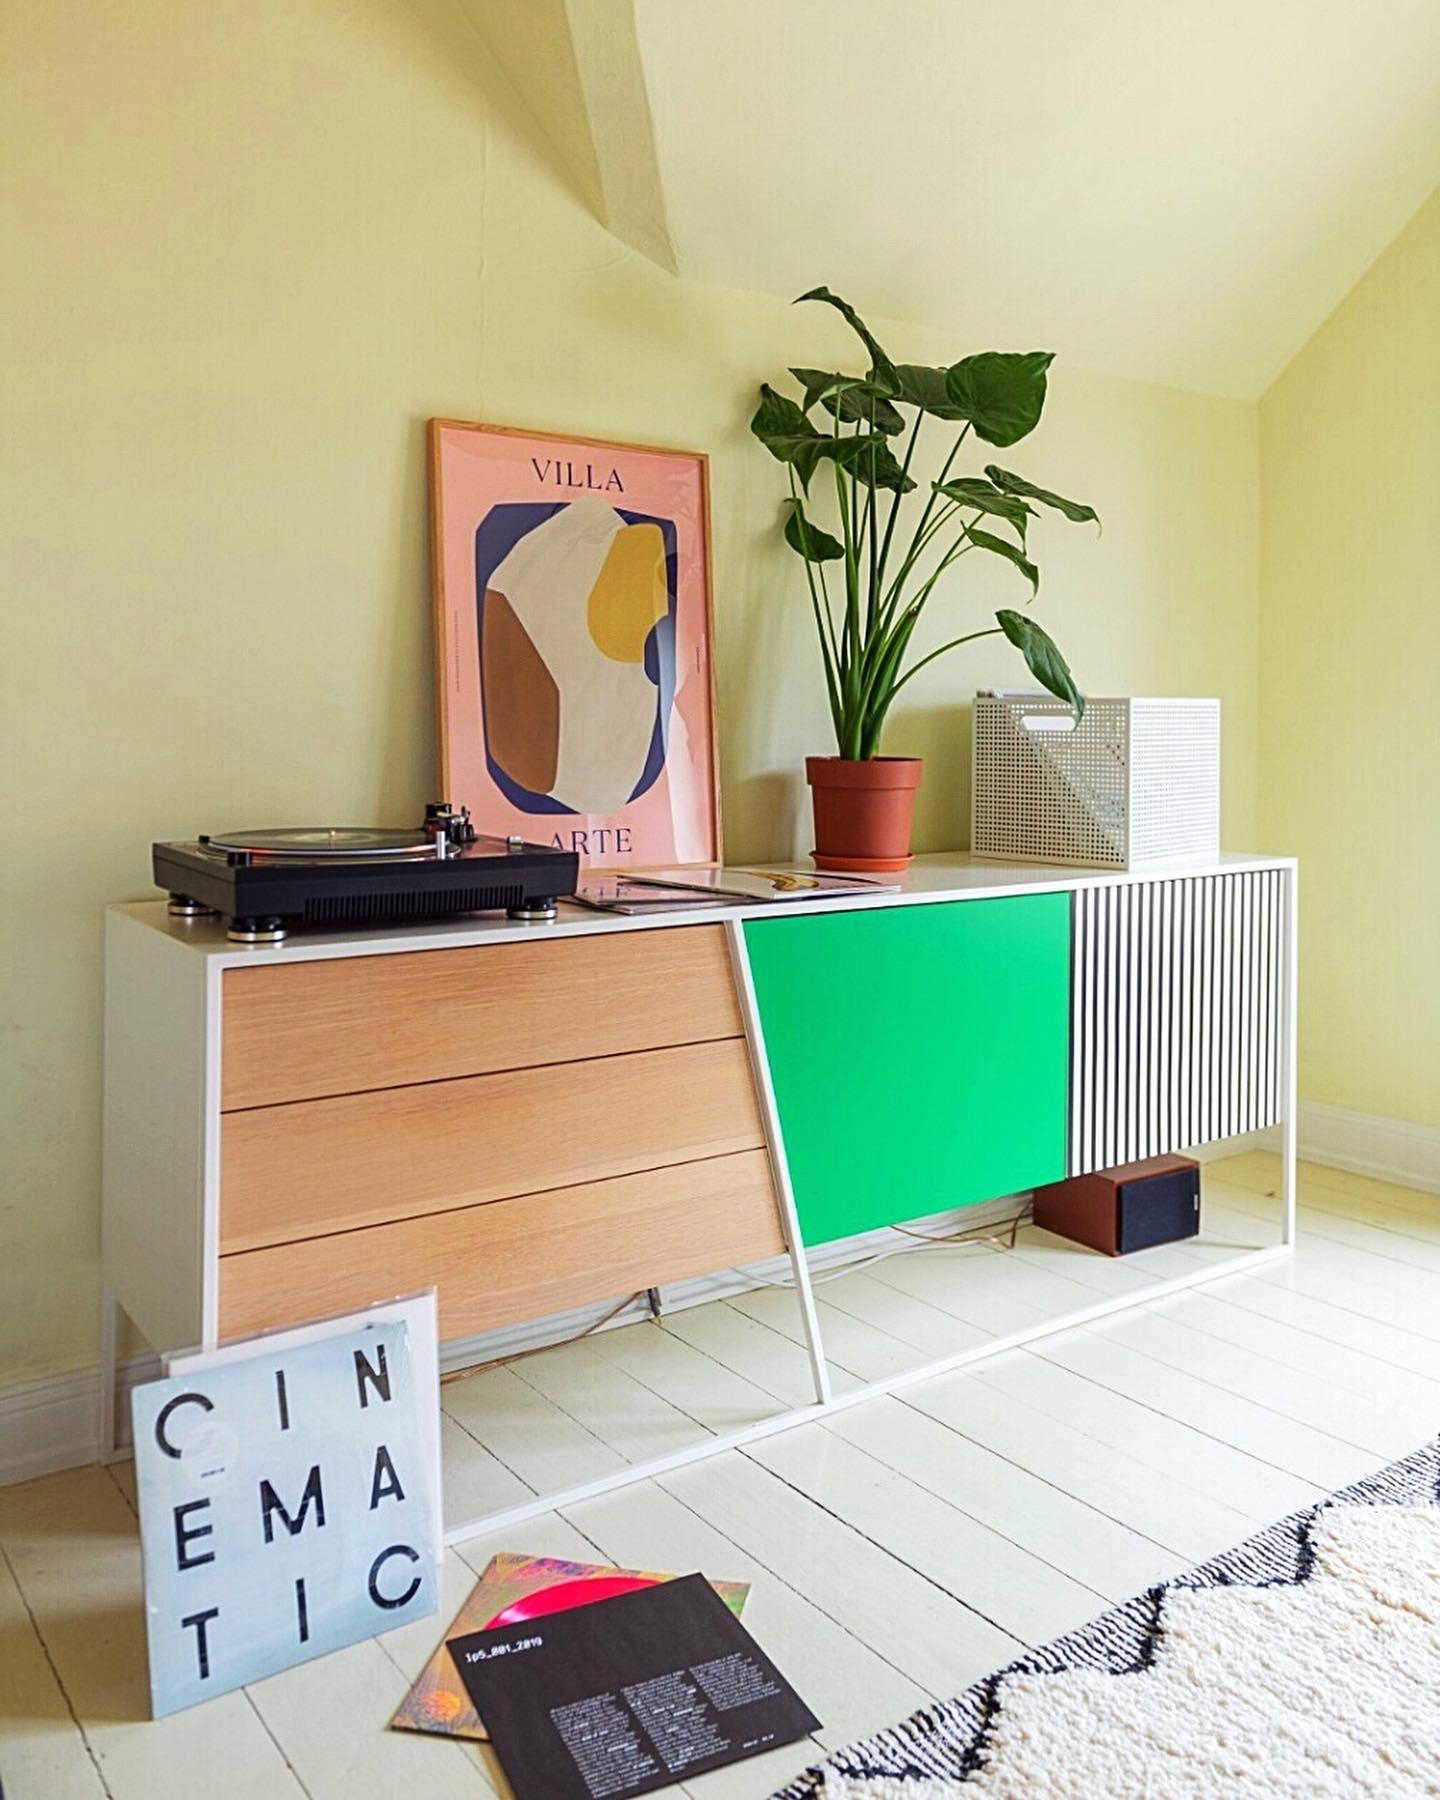 Kleines Sideboard-Makeover mit Klebefolie ✂️ 
#diy #livingroominspo #colorlover